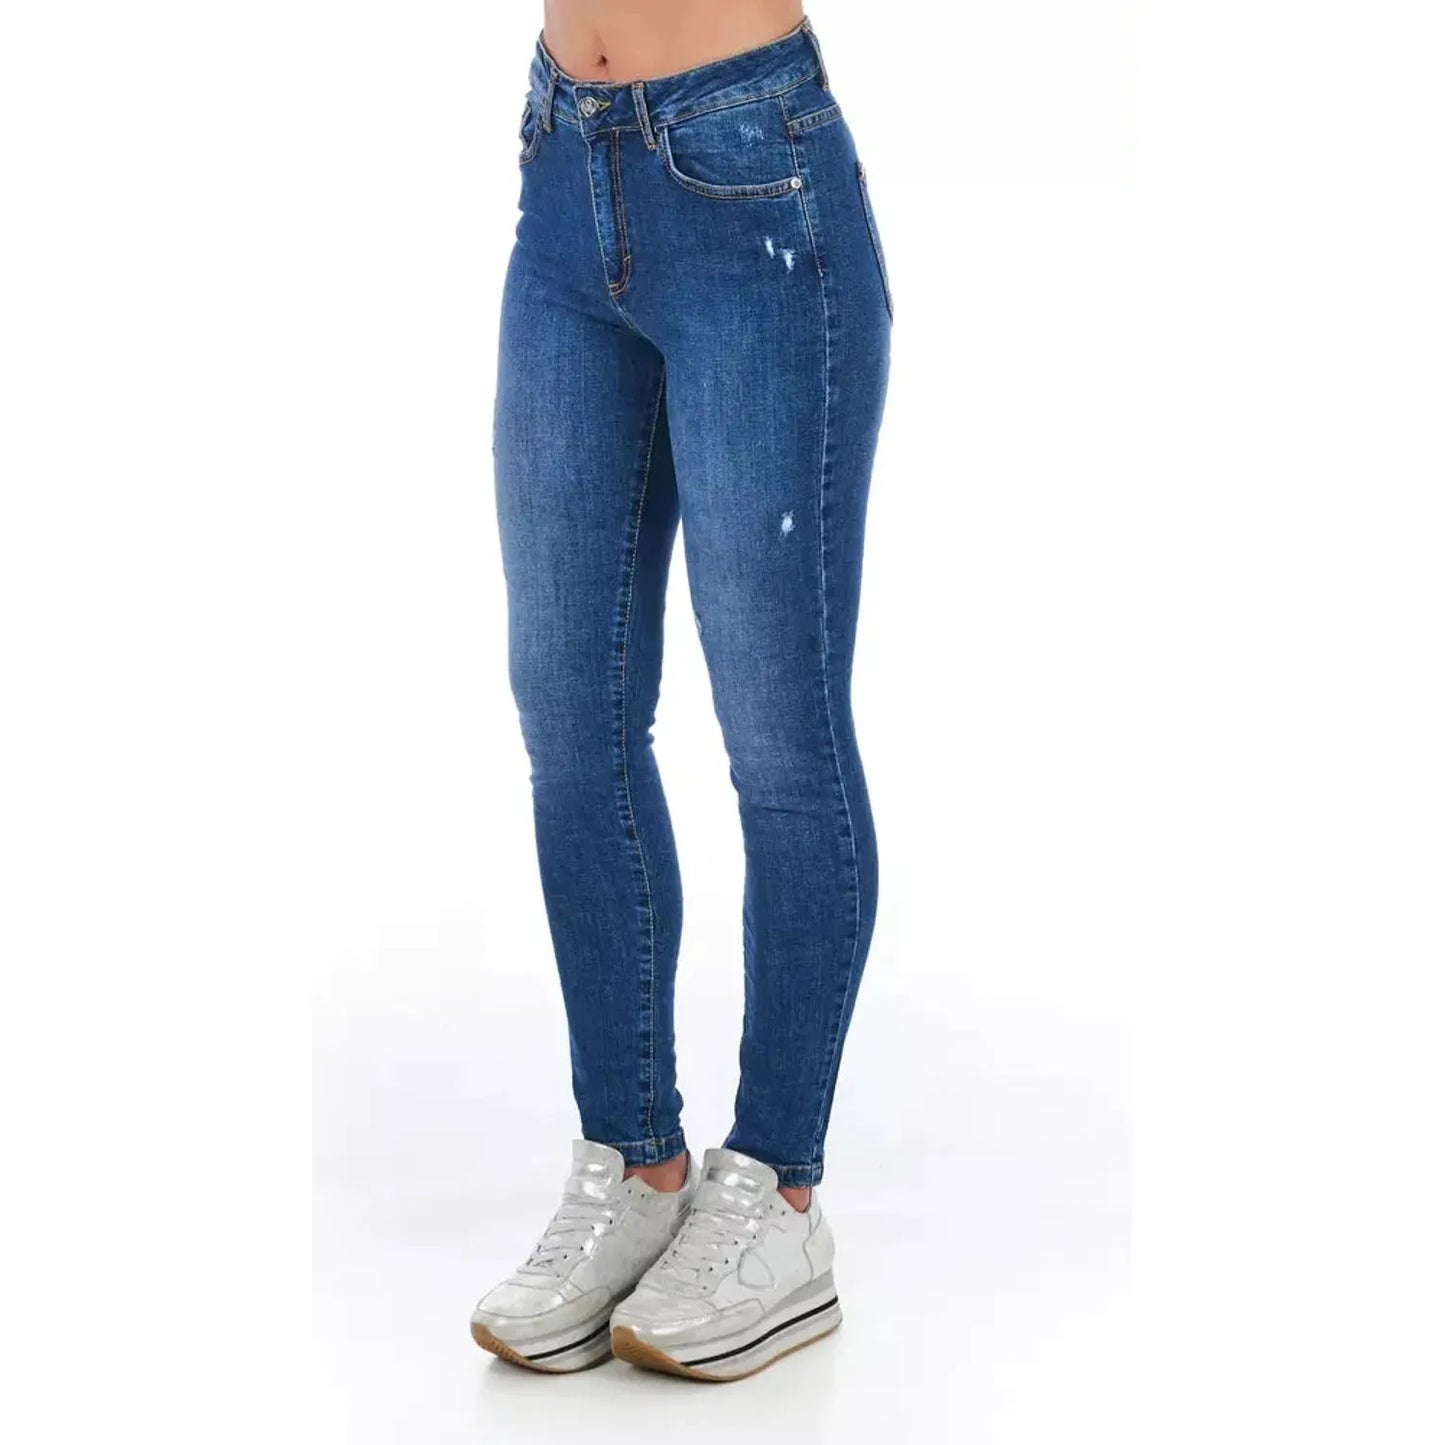 Frankie Morello Stylish Worn Wash Denim Jeans blue-jeans-pant-6 product-21770-229647066-21-7093278d-d16.webp